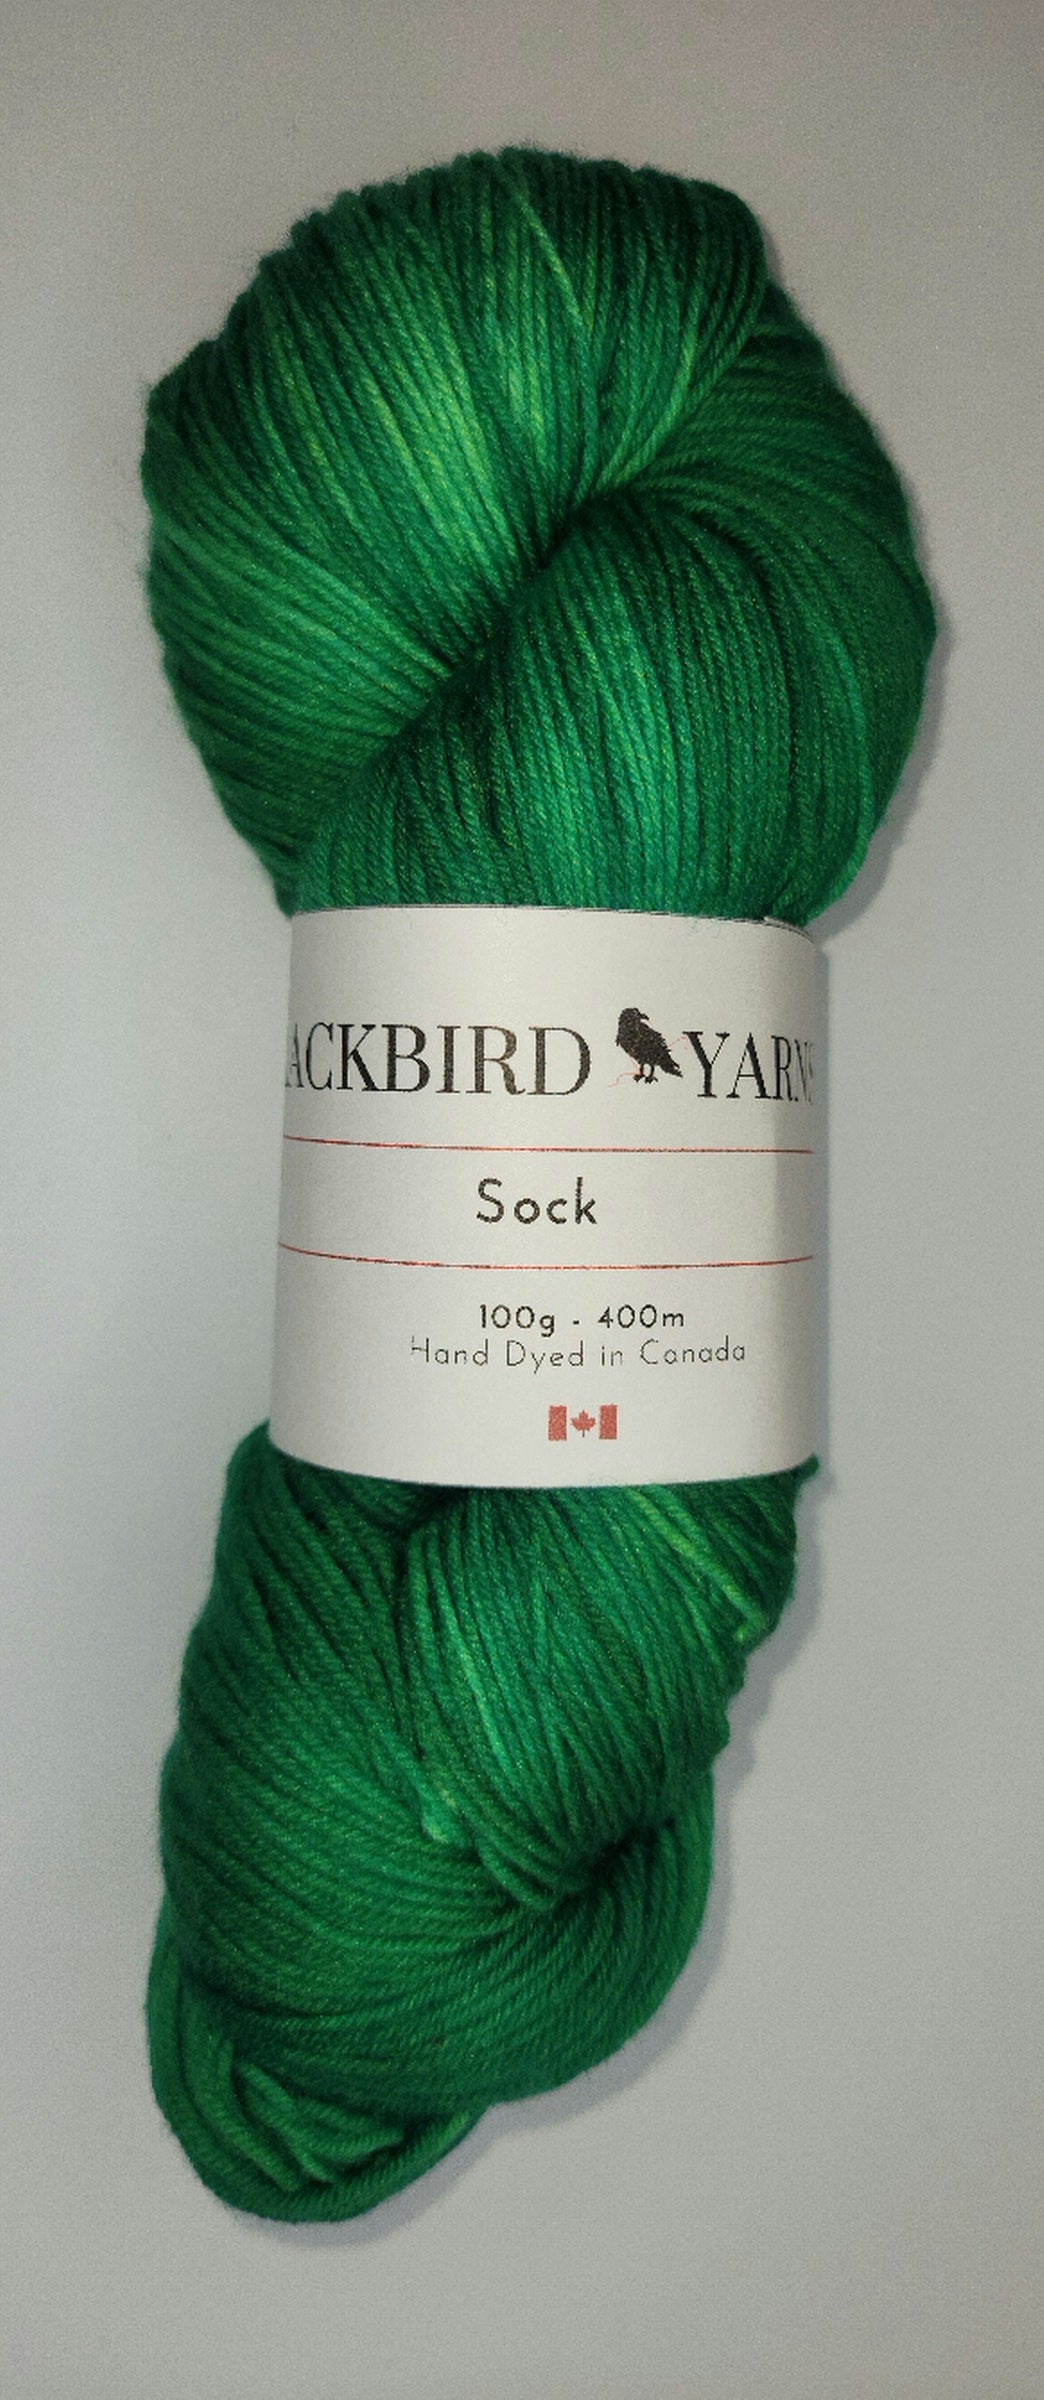 Blackbird Yarns Sock yarn 50 g